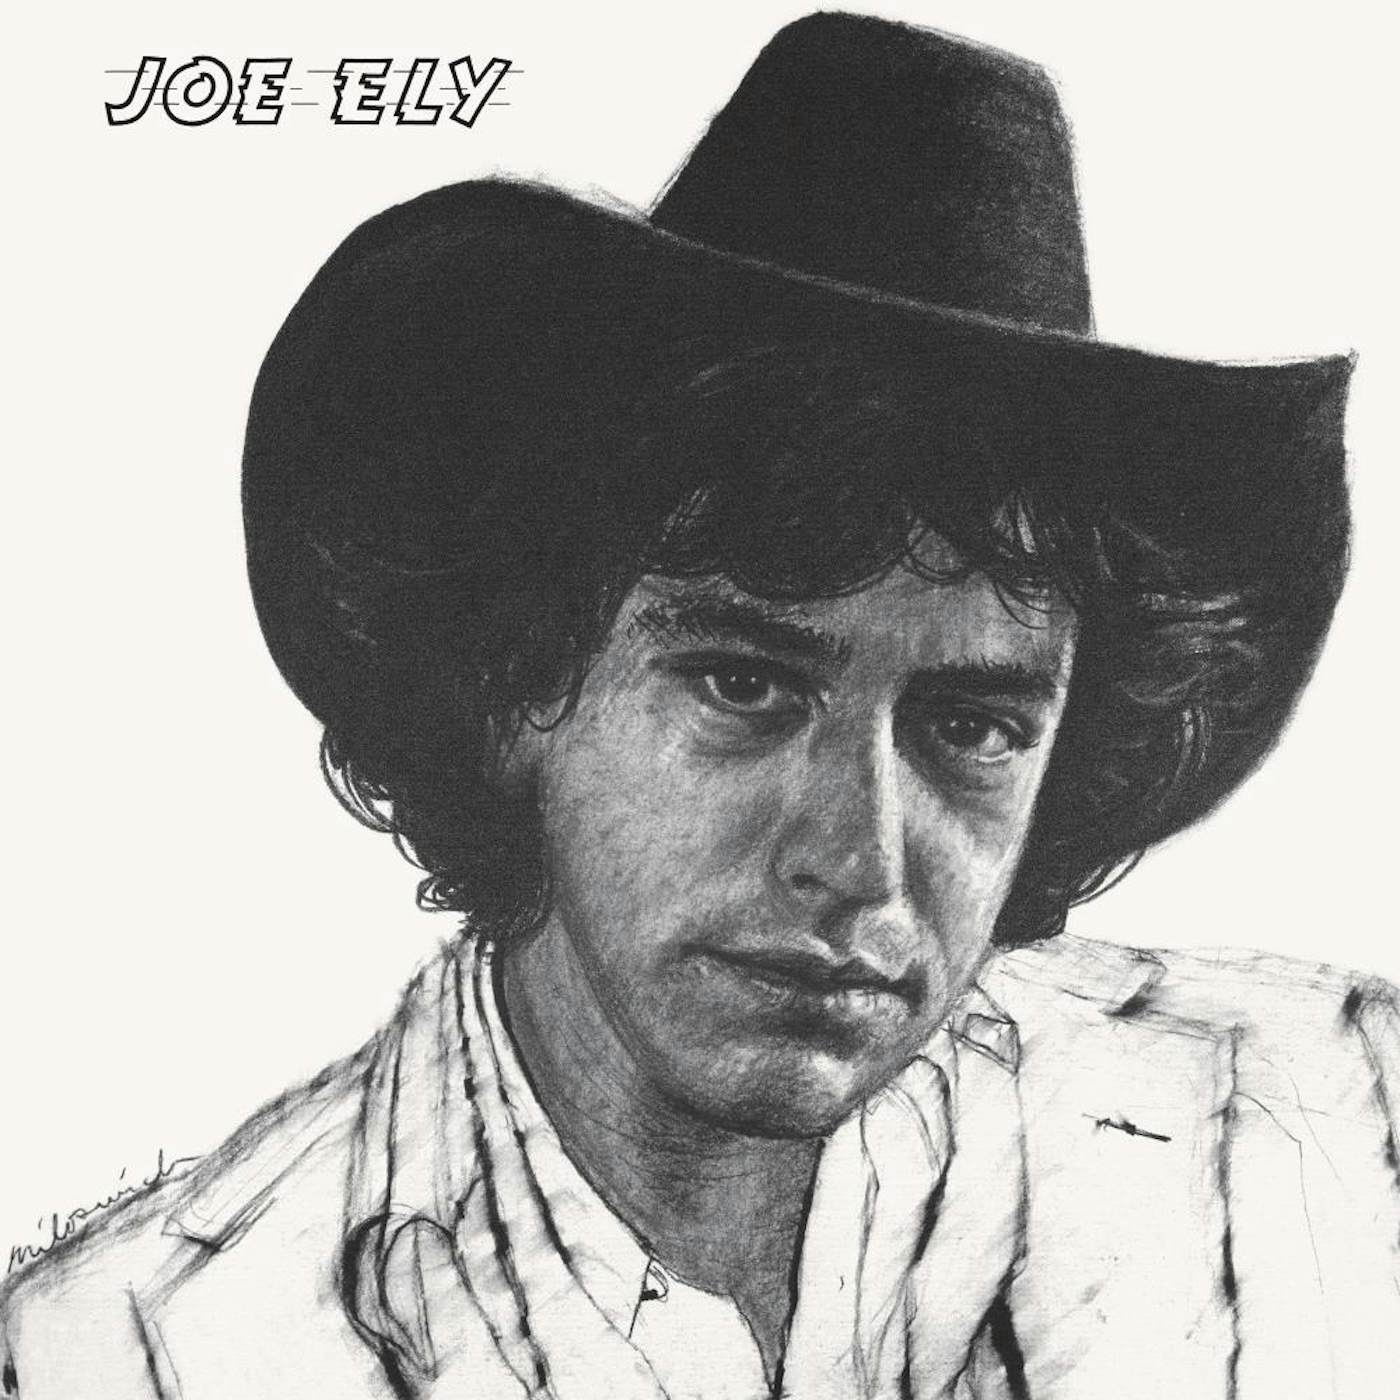 Joe Ely Vinyl Record